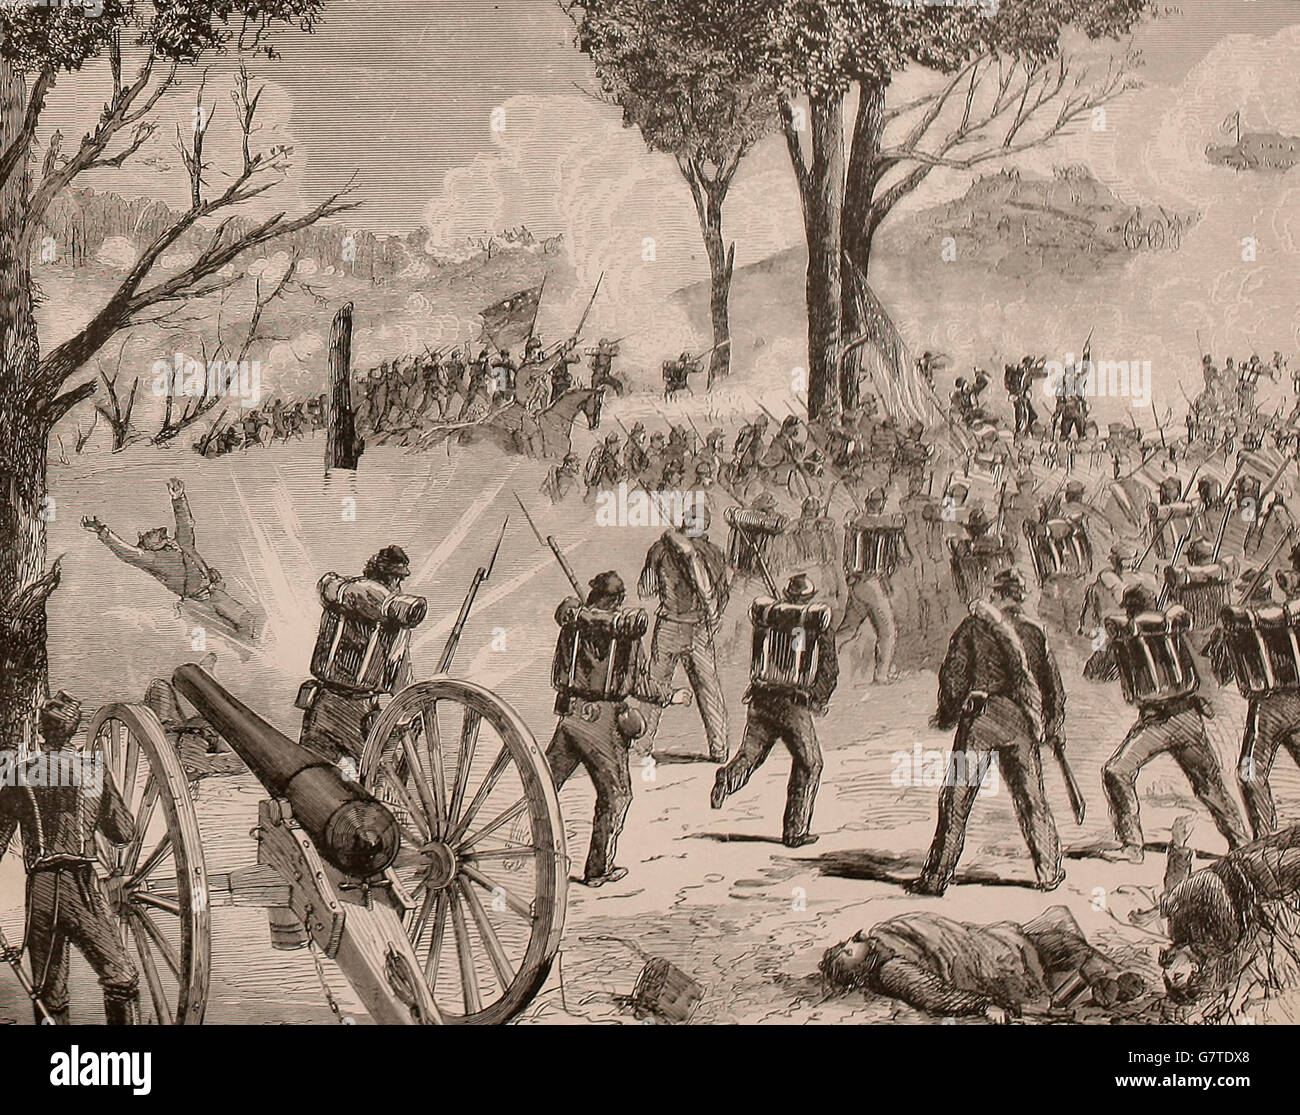 Schlacht bei Wappings Höhen - General Spinola Brigage fahren die Eidgenossen aus dem Hügel, 23. Juli 1863. USA Bürgerkrieg Stockfoto